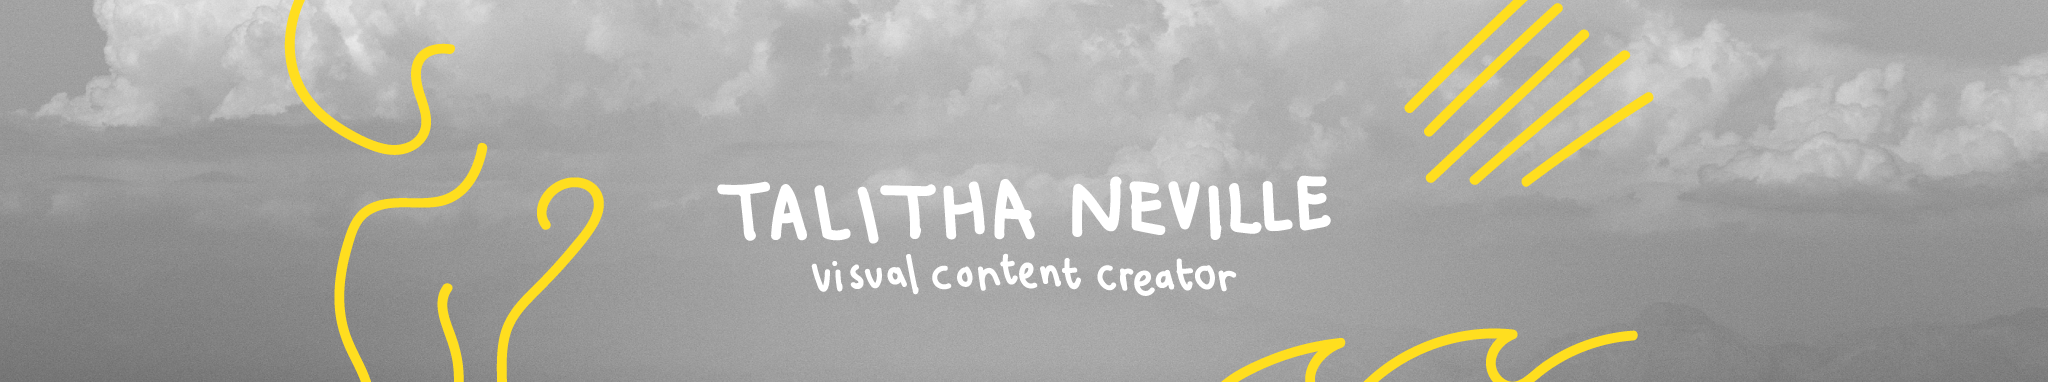 Talitha Neville profil başlığı